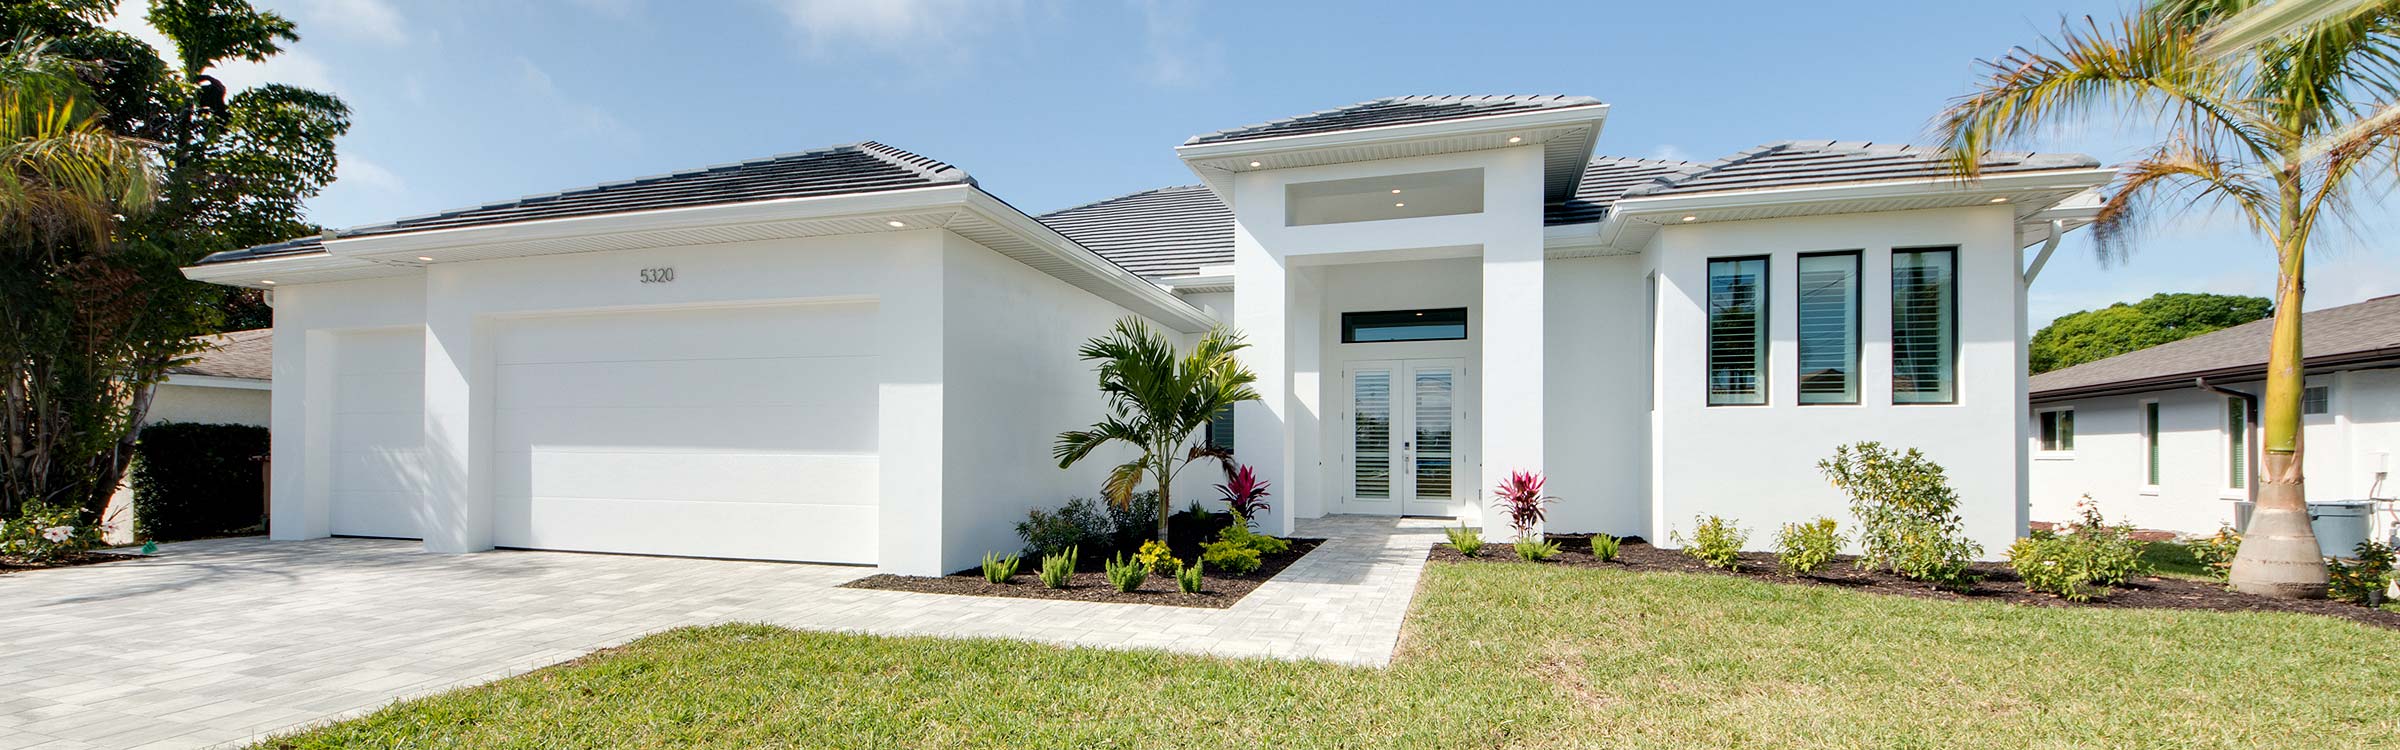 Short Sales - die Schnäppchen auf dem Immobilienmarkt in Florida